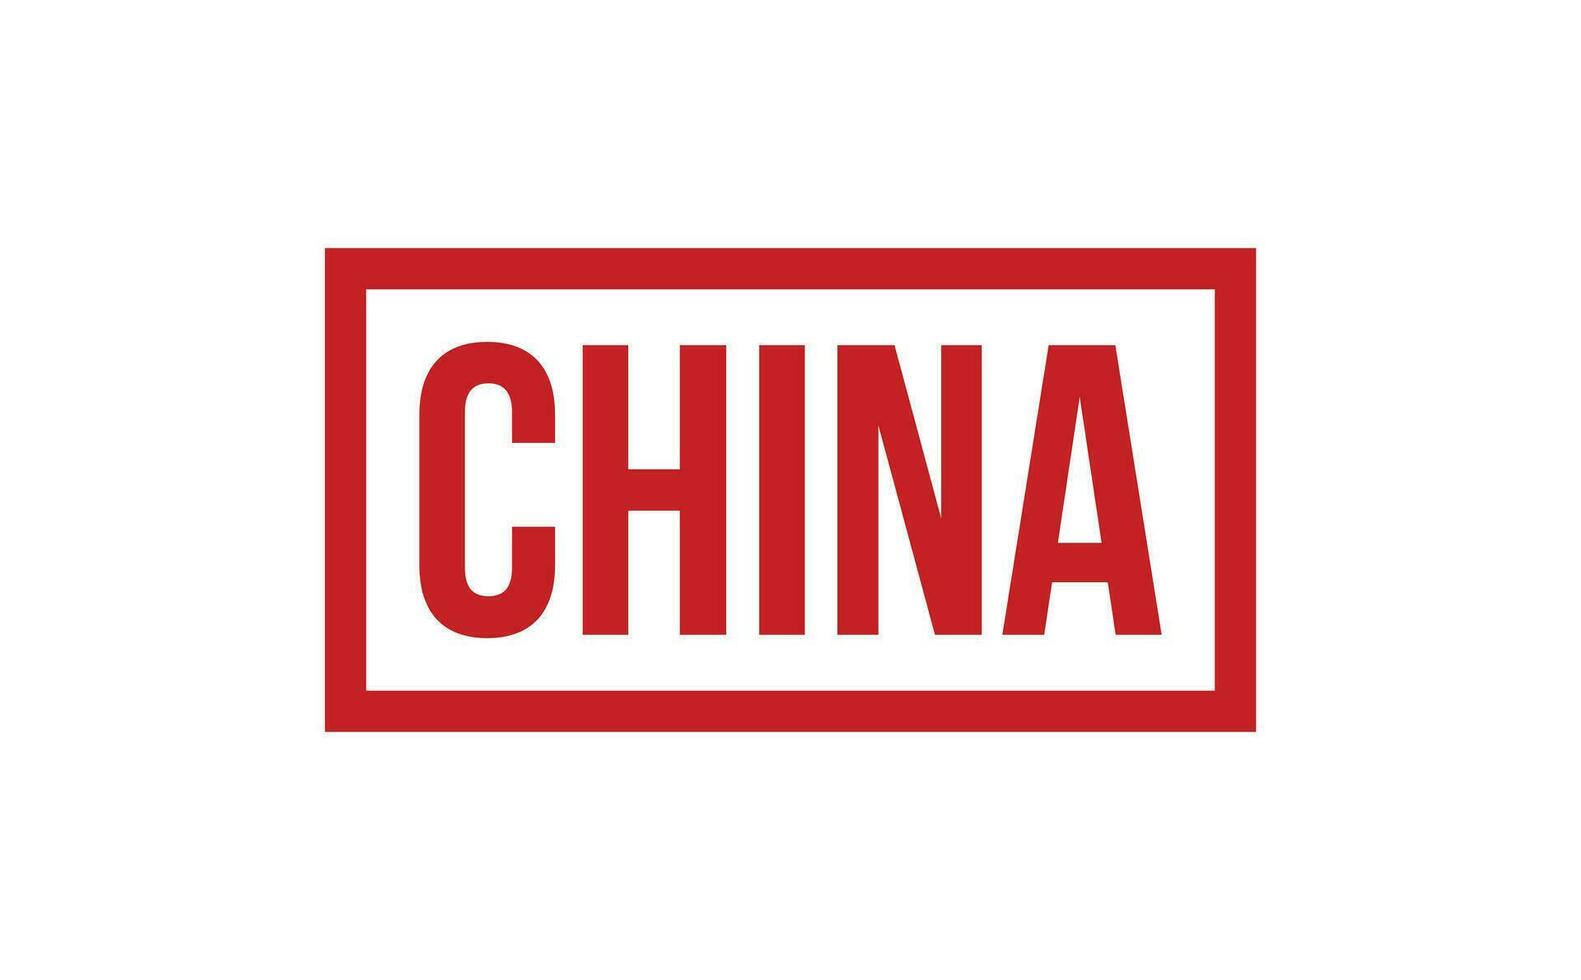 China caucho sello sello vector